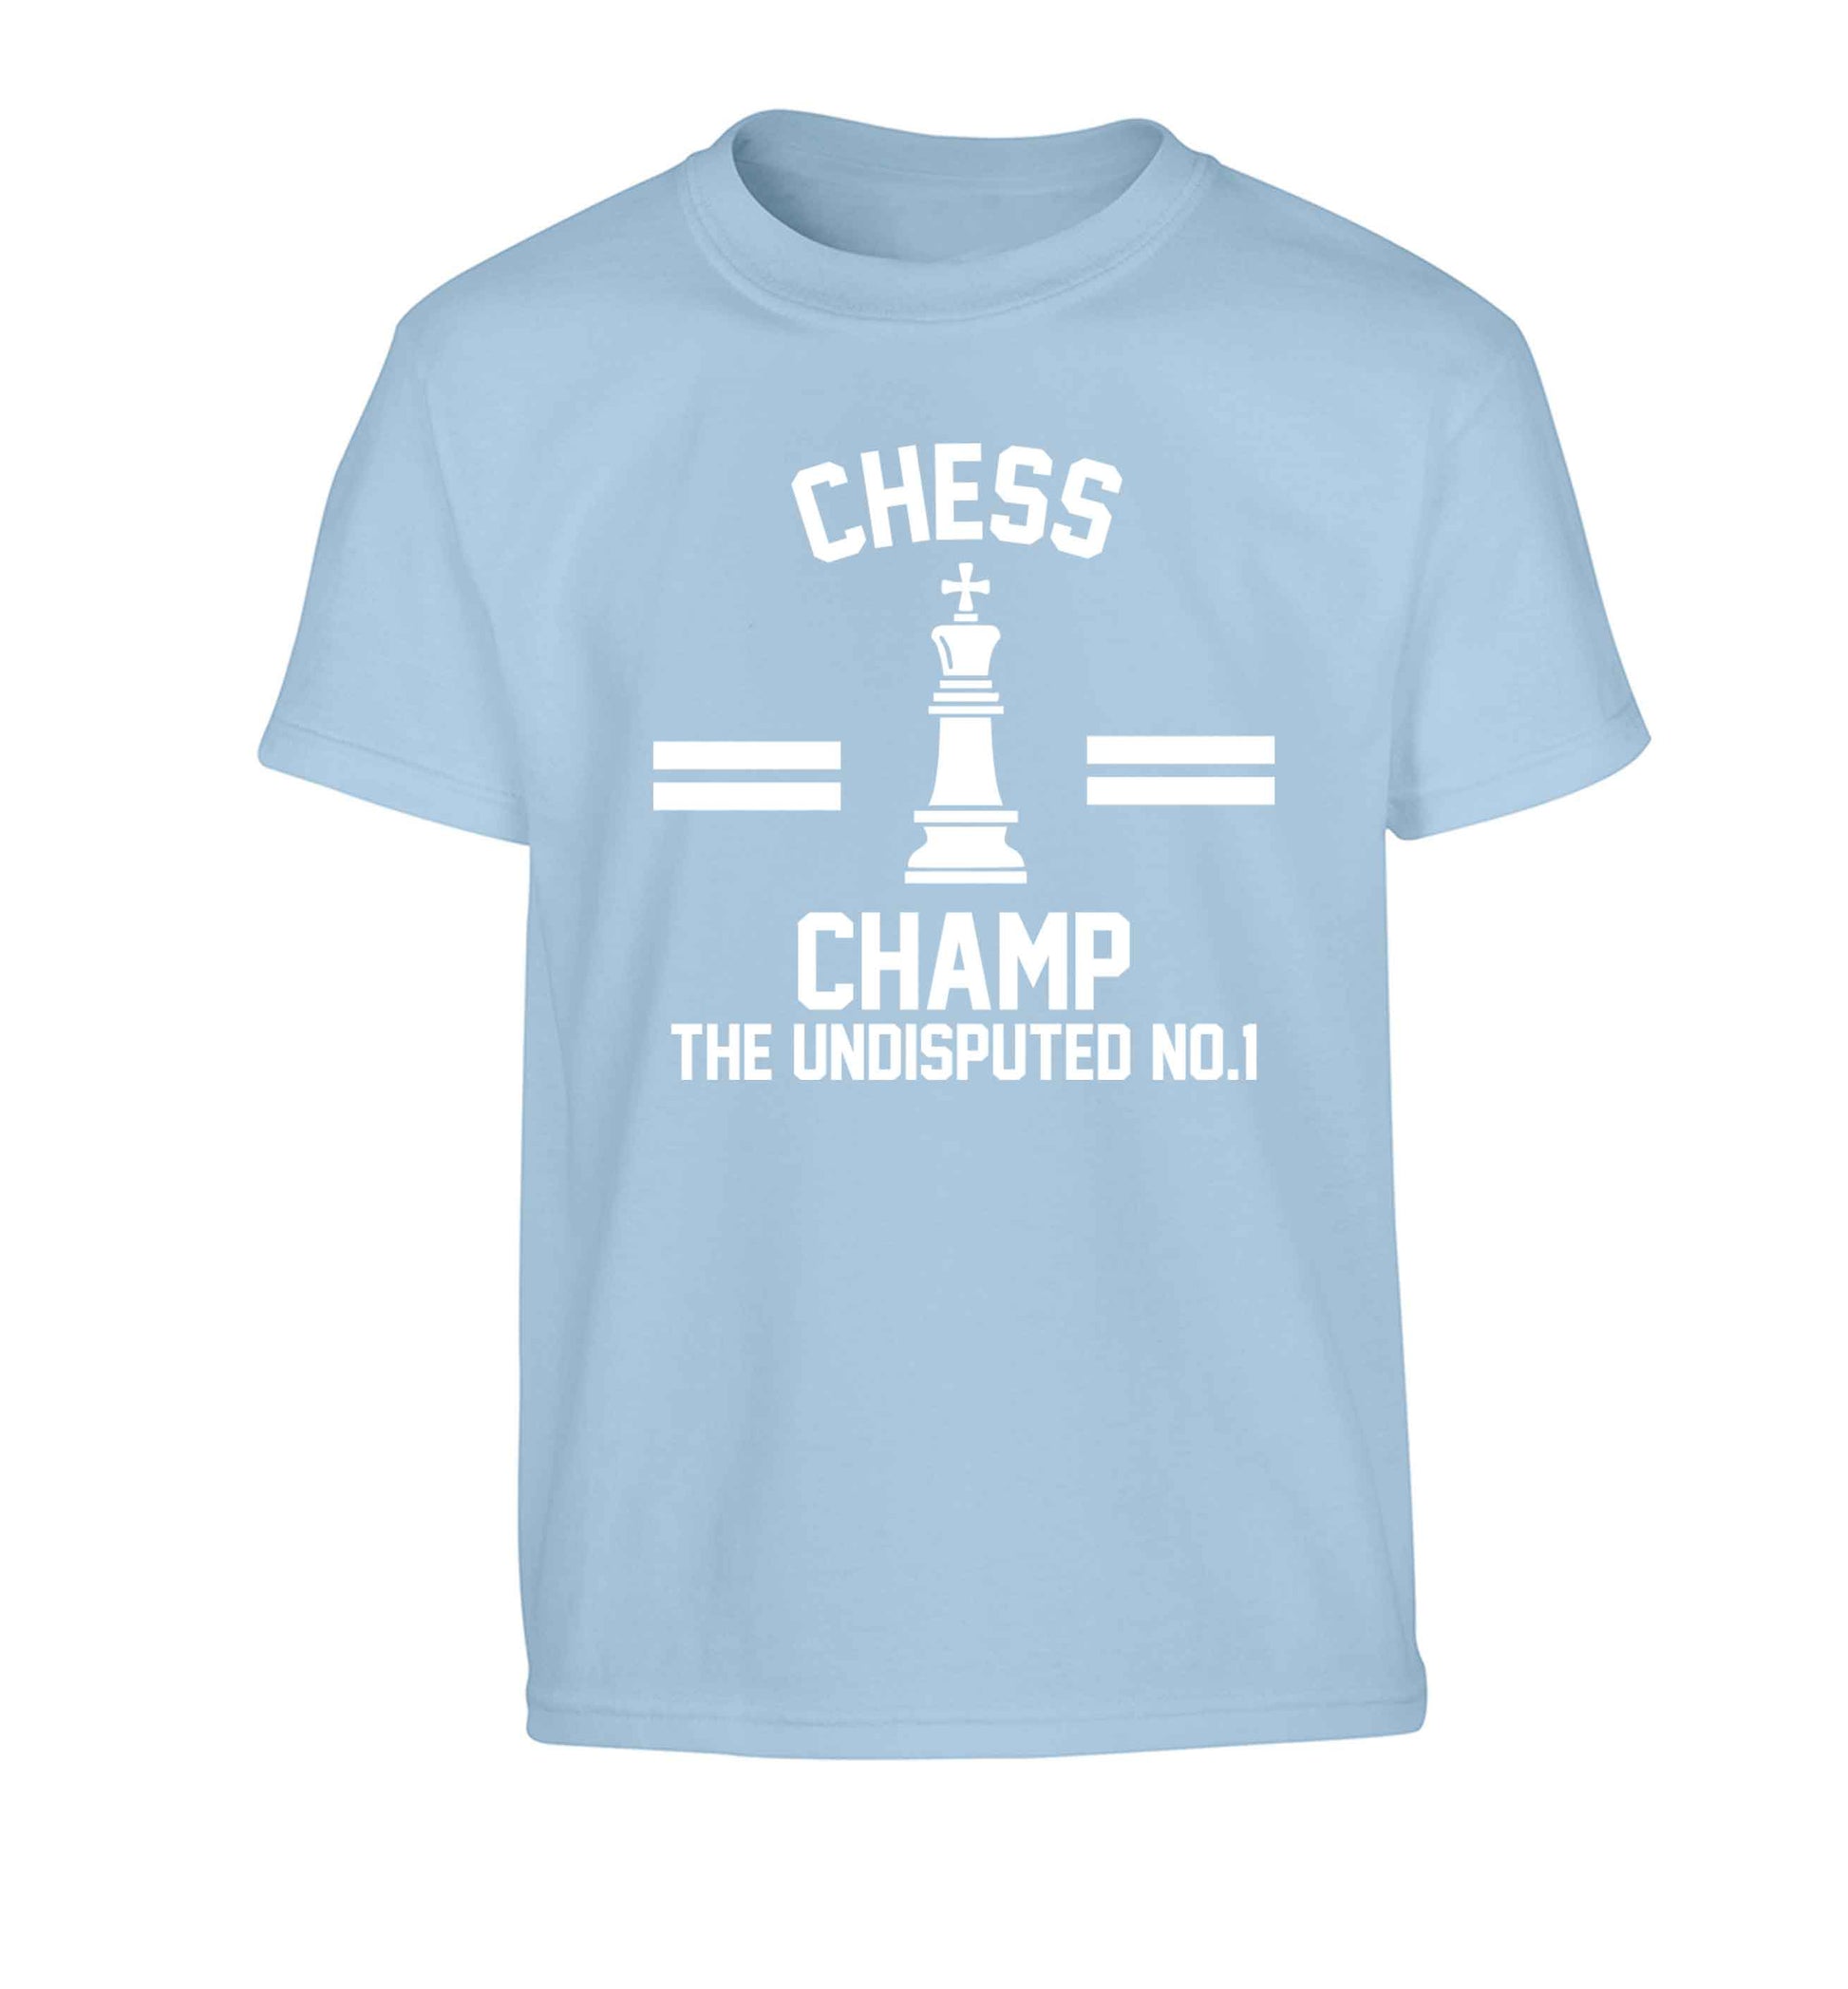 Undisputed chess championship no.1  Children's light blue Tshirt 12-13 Years